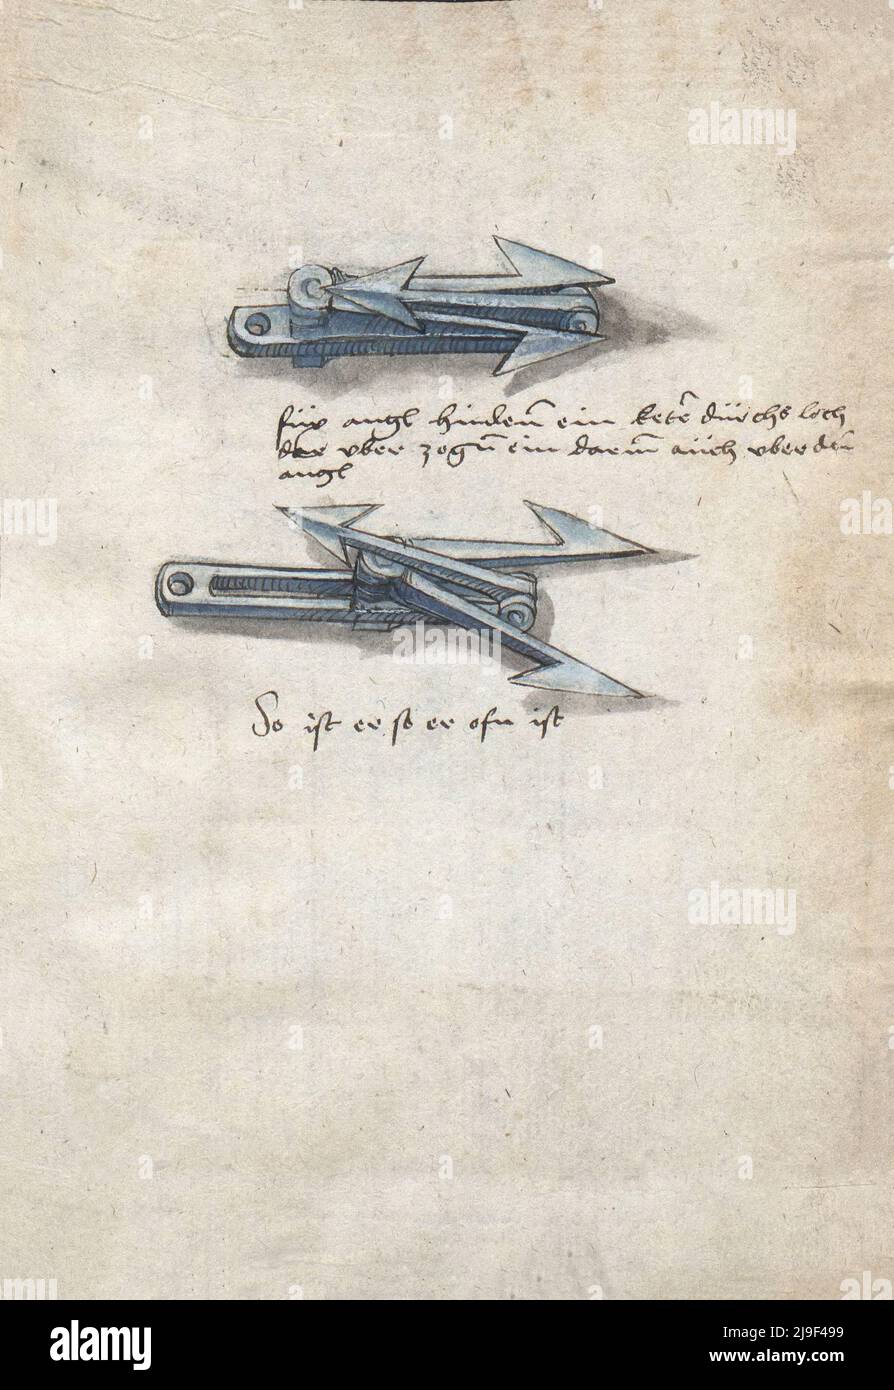 Illustrazione medievale di Caltrop. Gli strumenti di Martin Löffelholz (1505) Löffelholtz Codex. Illustrazioni e descrizioni di tutti i tipi di attrezzi manuali, Foto Stock